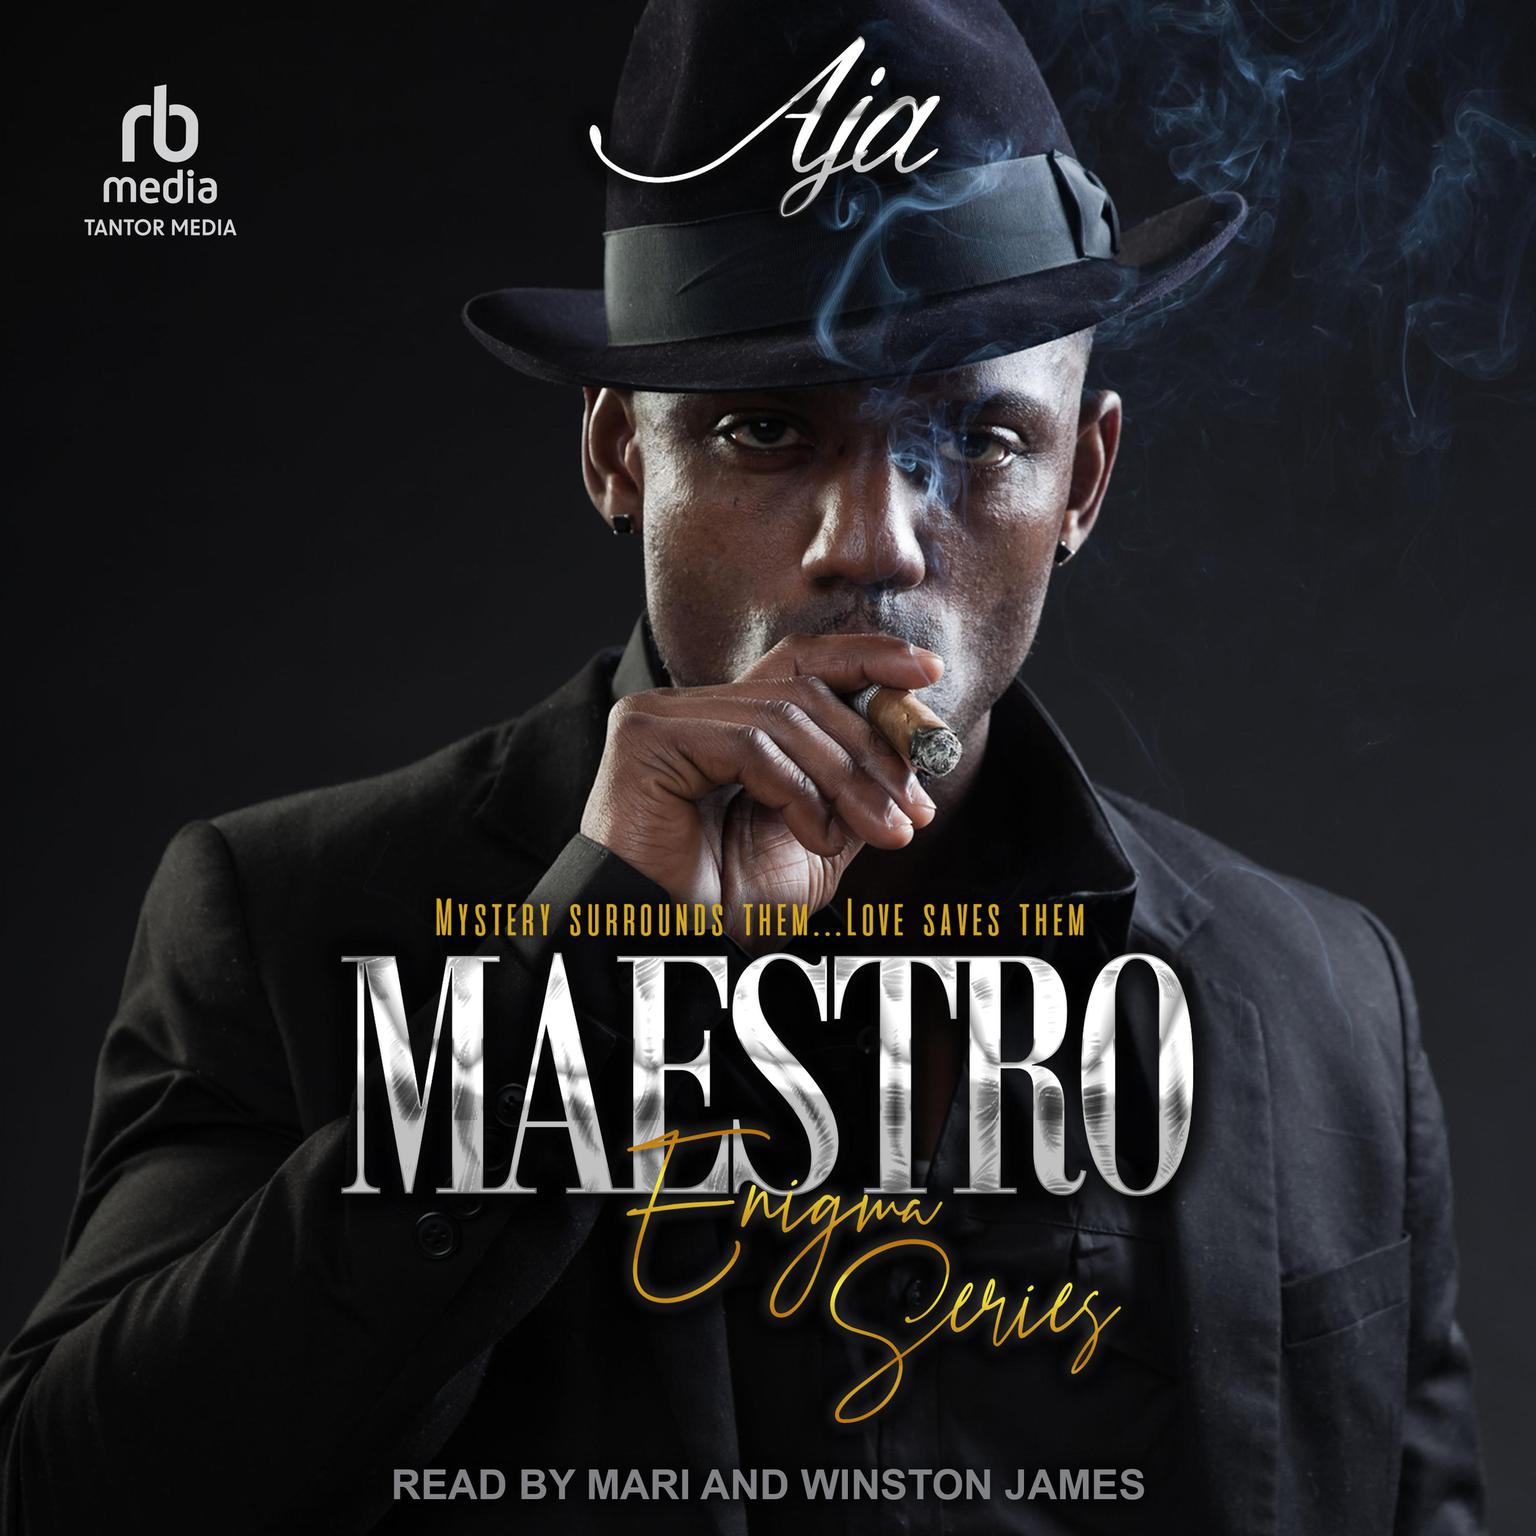 Maestro Audiobook, by Aja 